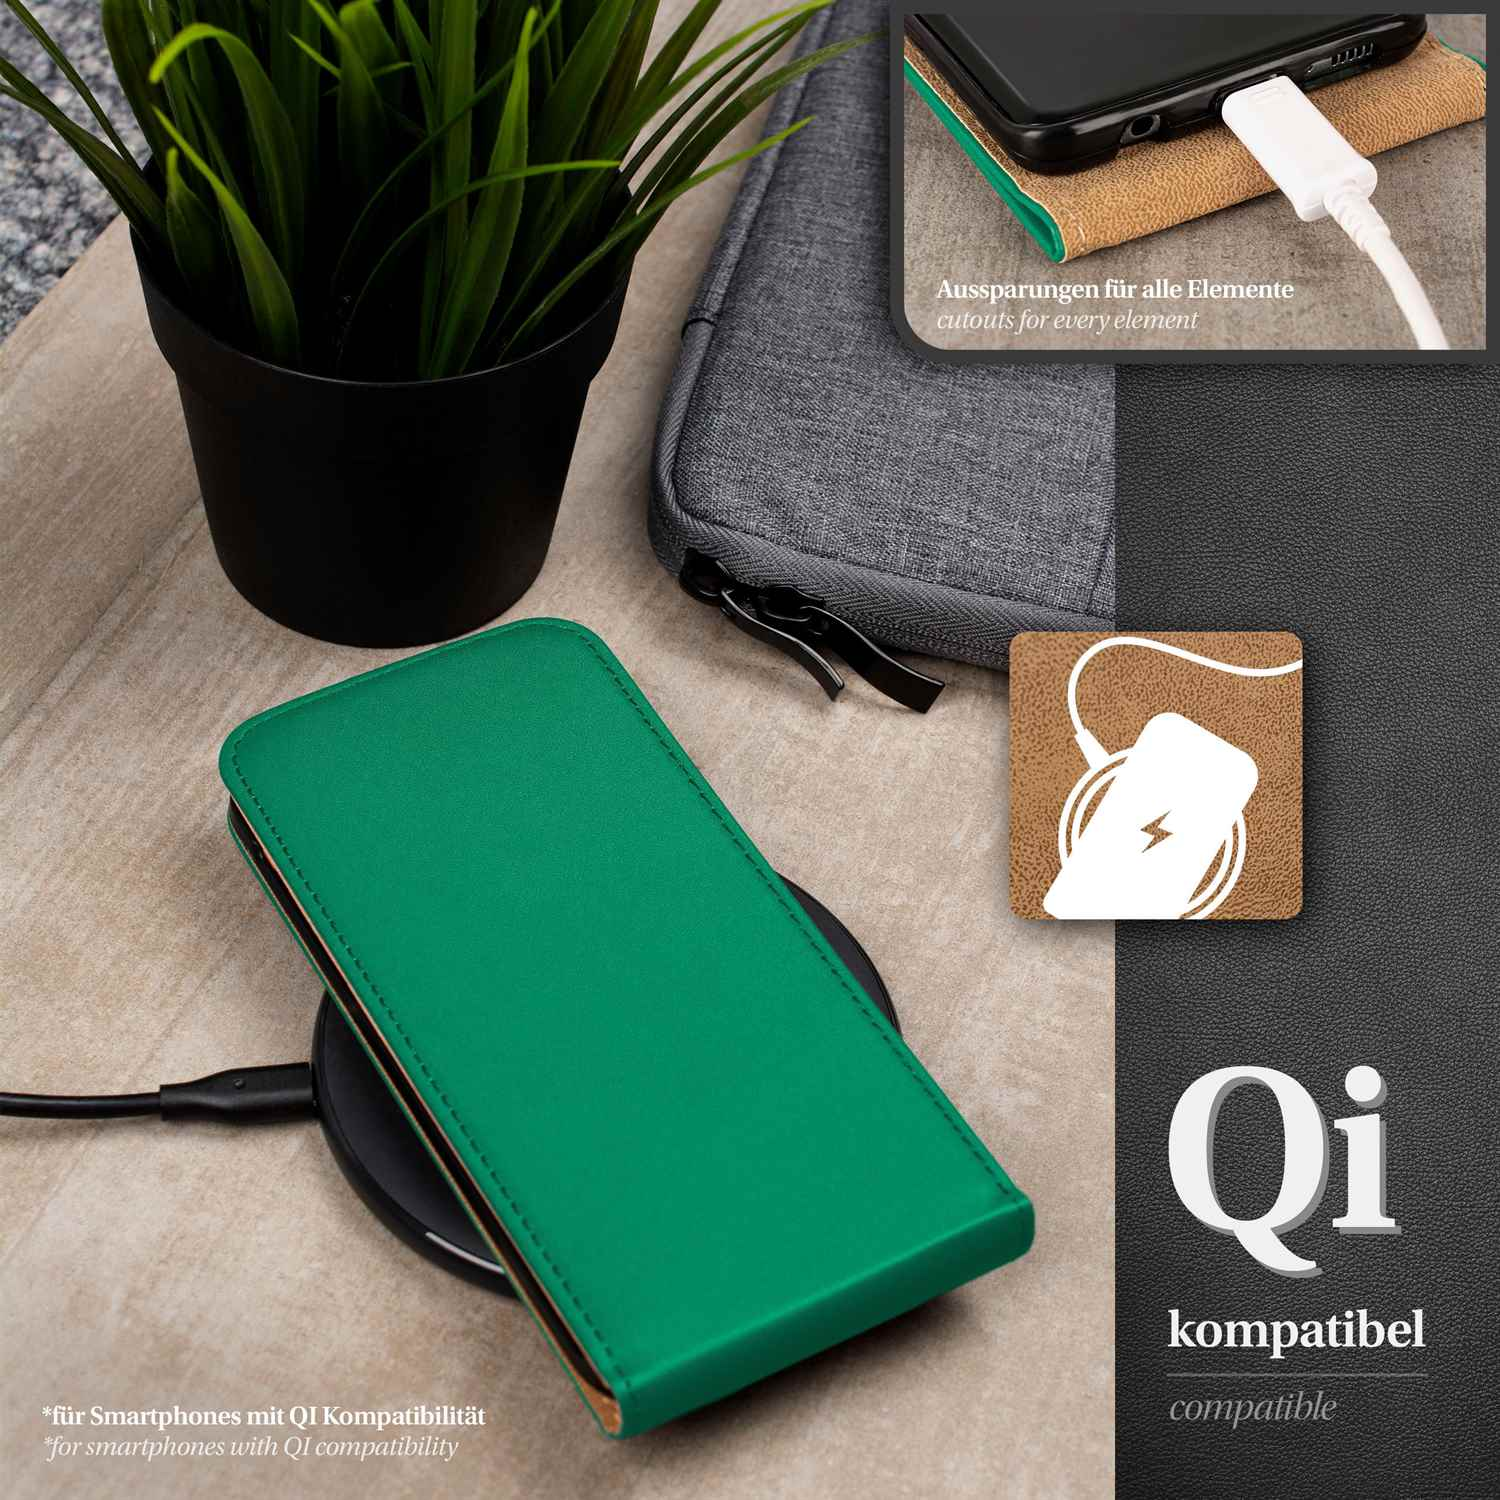 Cover, iPhone Emerald-Green Case, Flip MOEX 5s, Flip Apple,